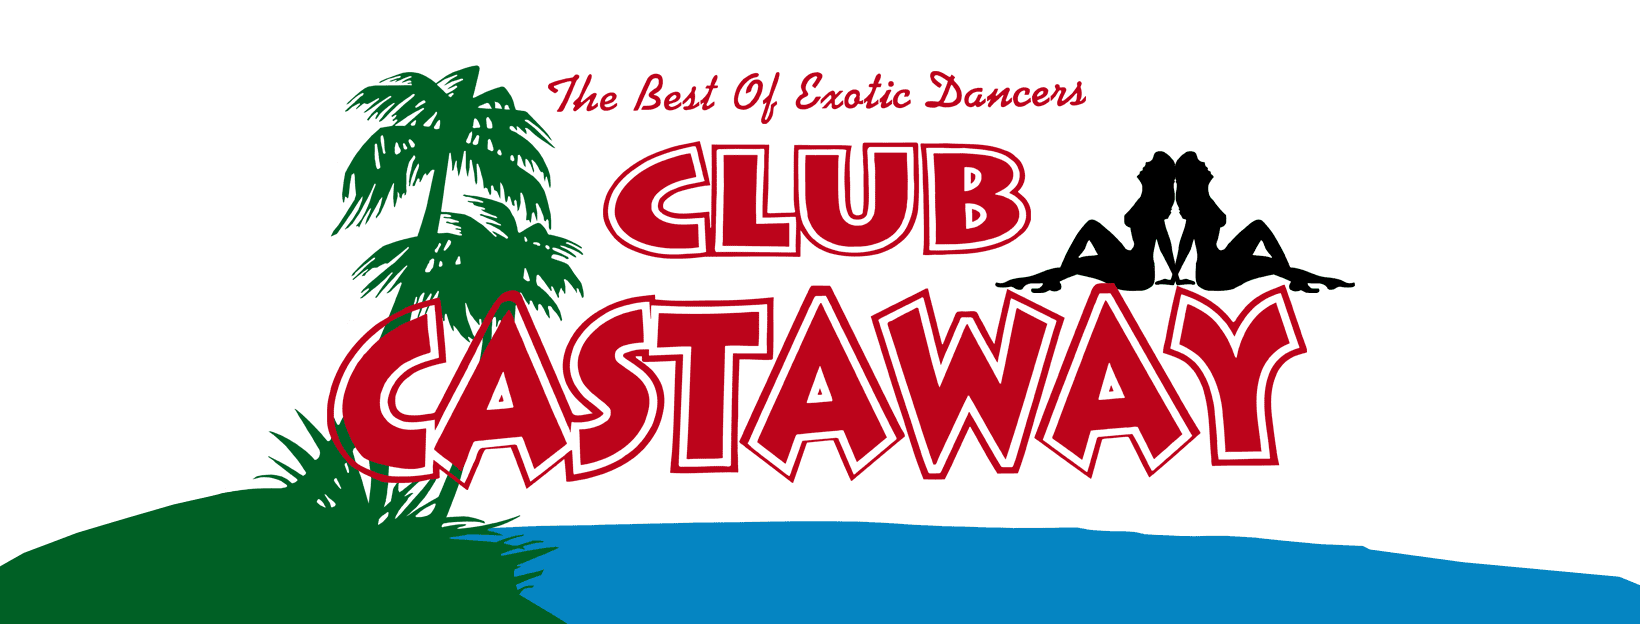 Club Castaway